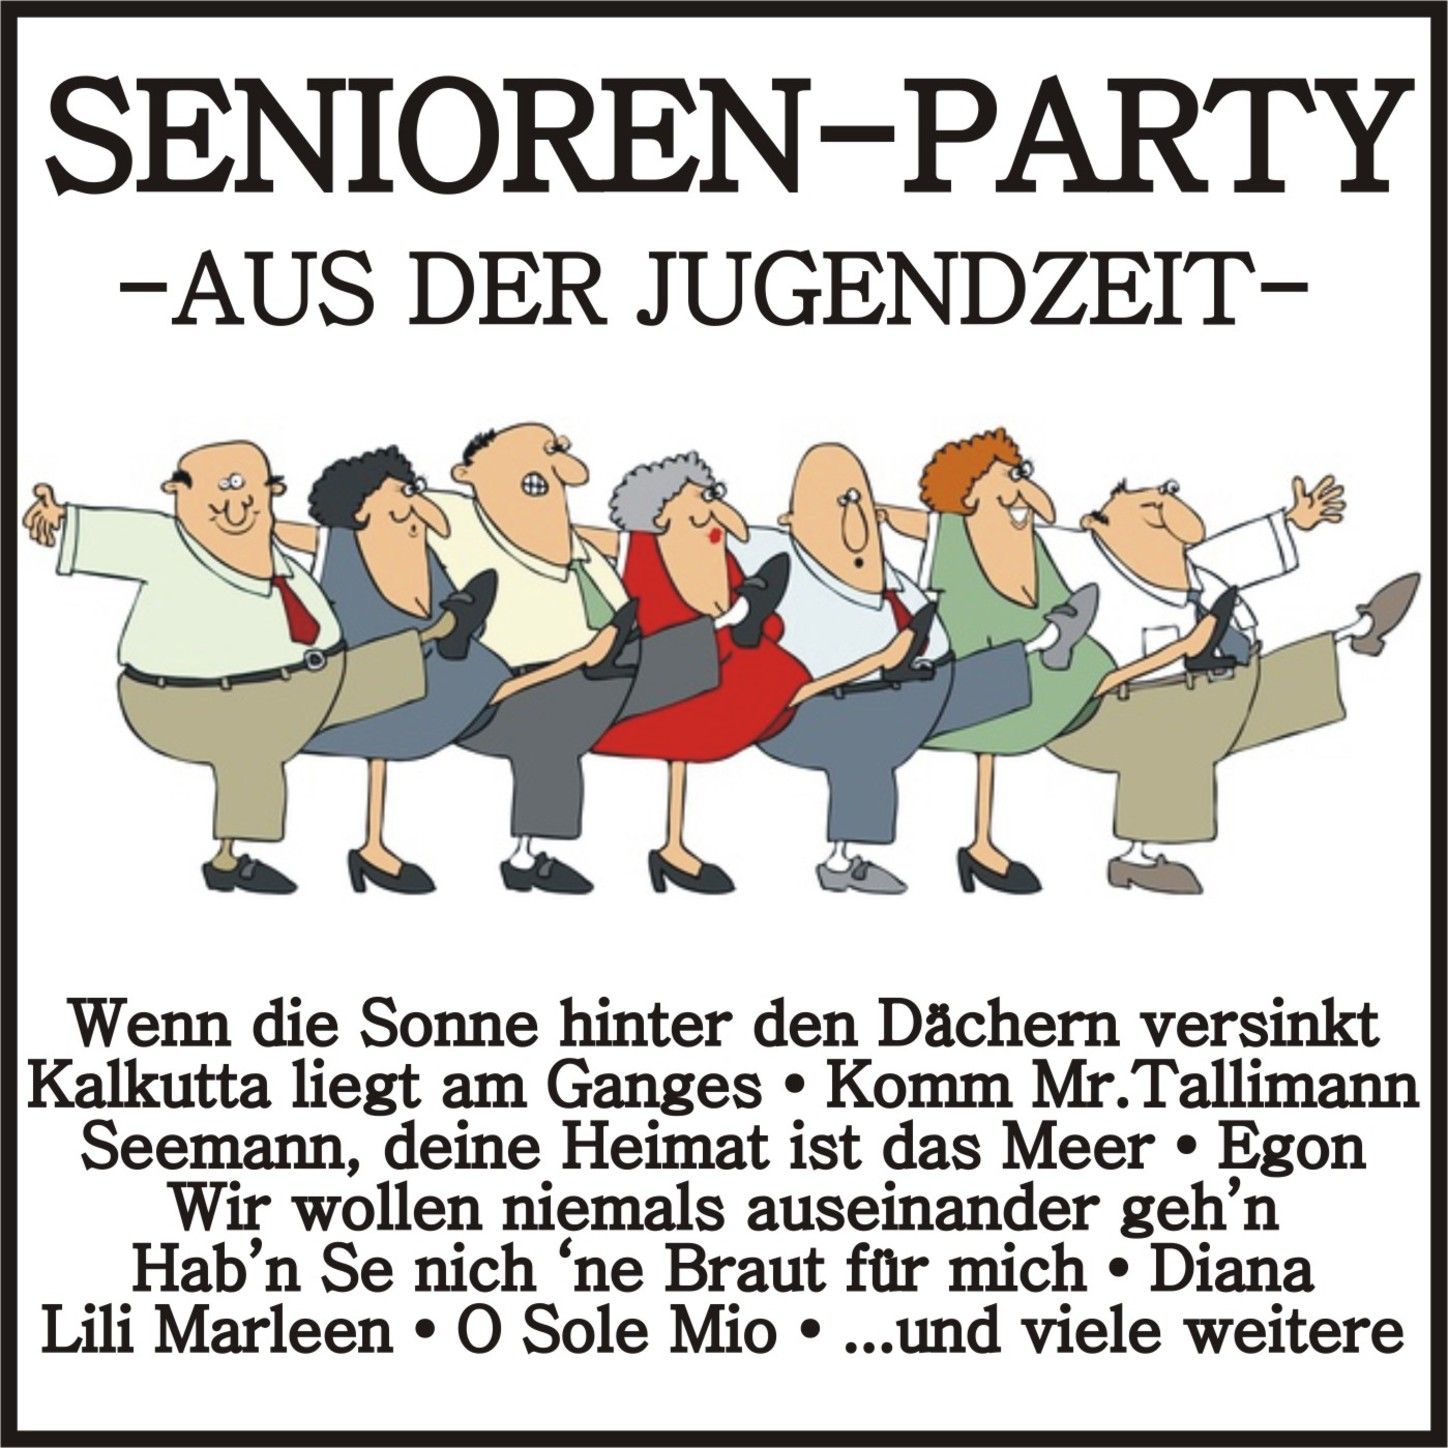 Senioren-Party - Aus der Jugendzeit